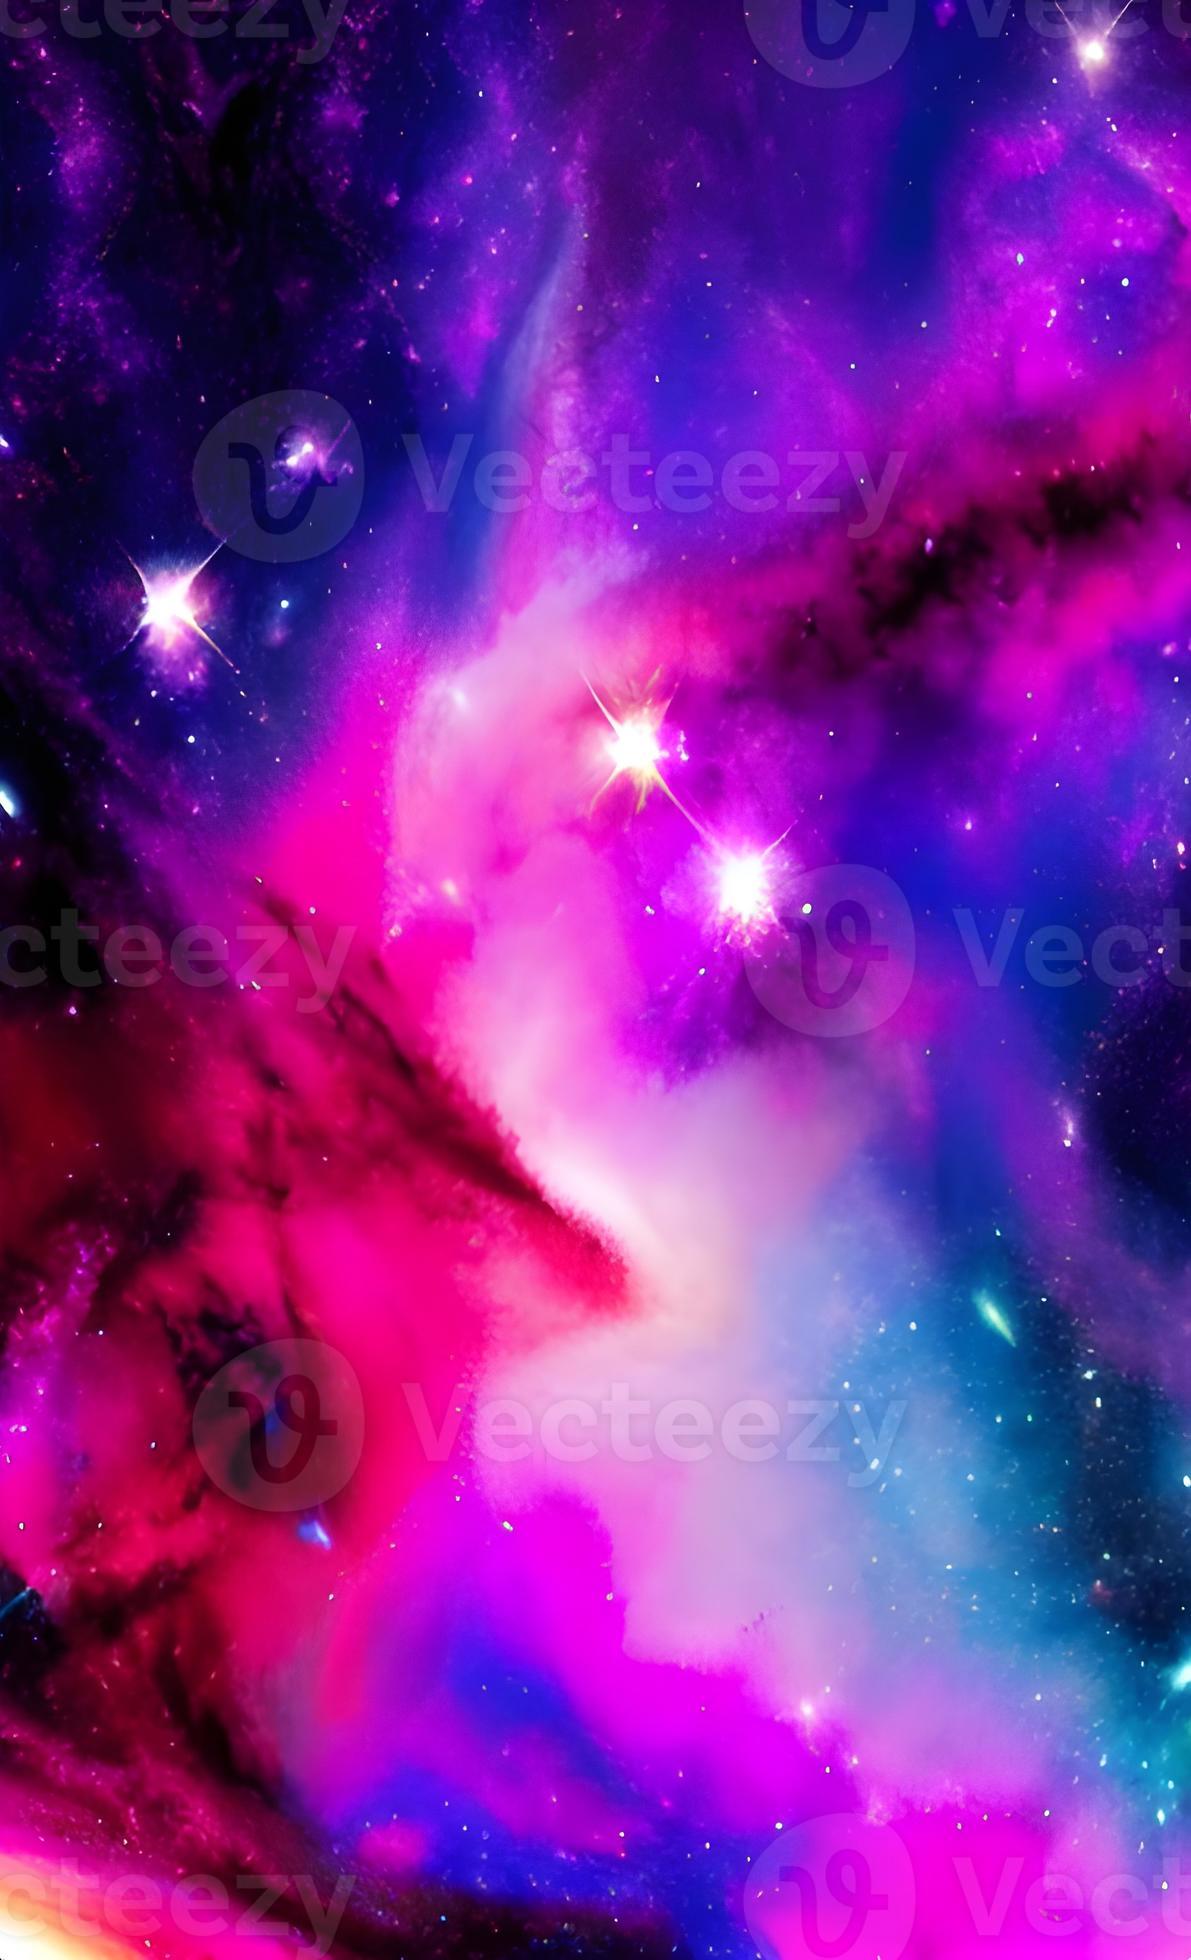 Không gian thiên hà đêm tối với gam màu tím đầy mê hoặc sẽ làm cho bạn cảm thấy ngỡ ngàng và hồi hộp trên màn hình của mình. Hãy xem hình nền này để cảm nhận sự ảo diệu của vũ trụ này.